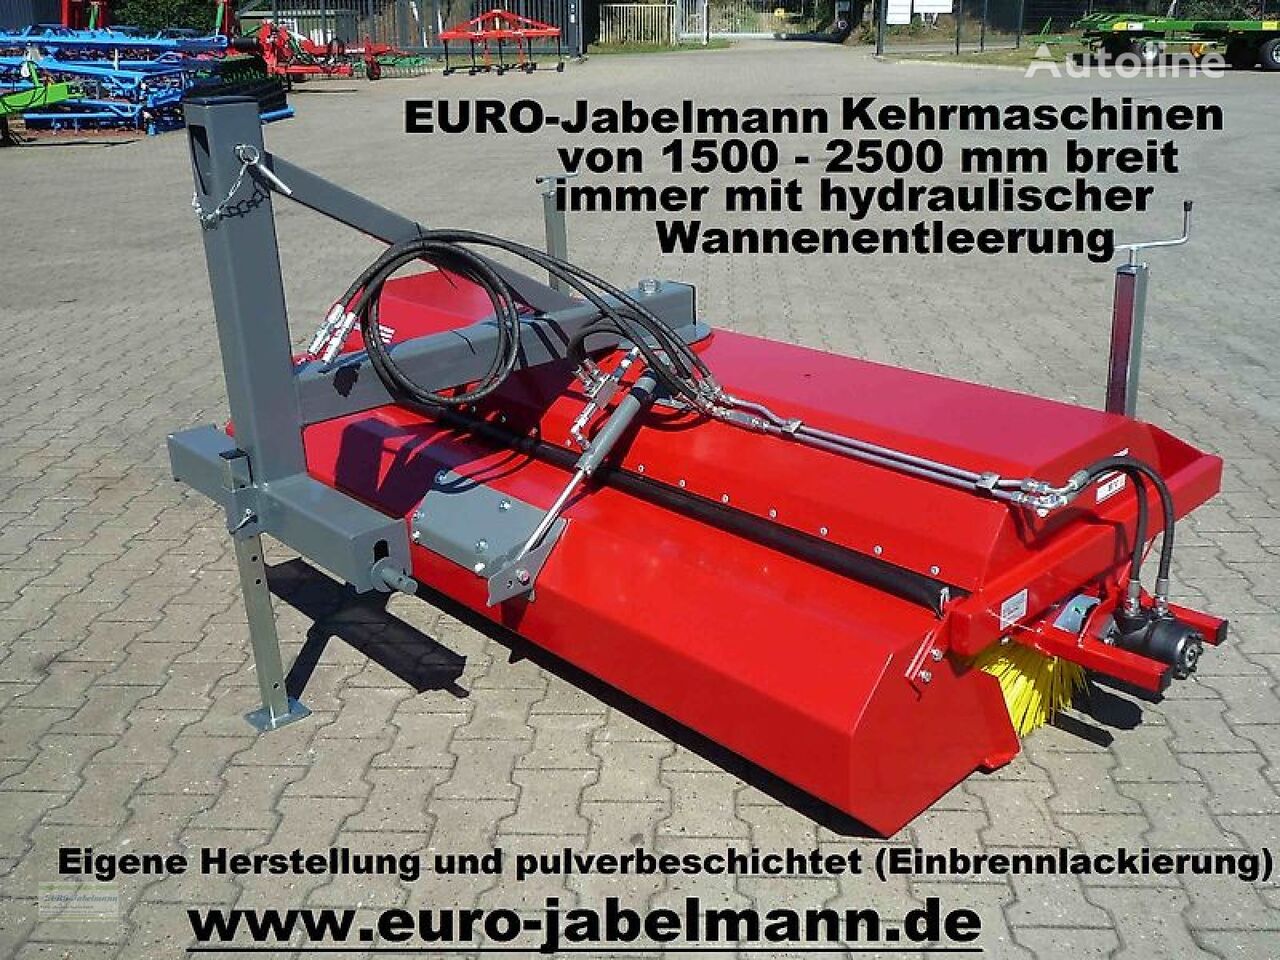 Euro-Jabelmann Kehrmaschinen, NEU, Breiten 1500 - 2500 mm, eigene Herstellung, cepillo industrial nuevo